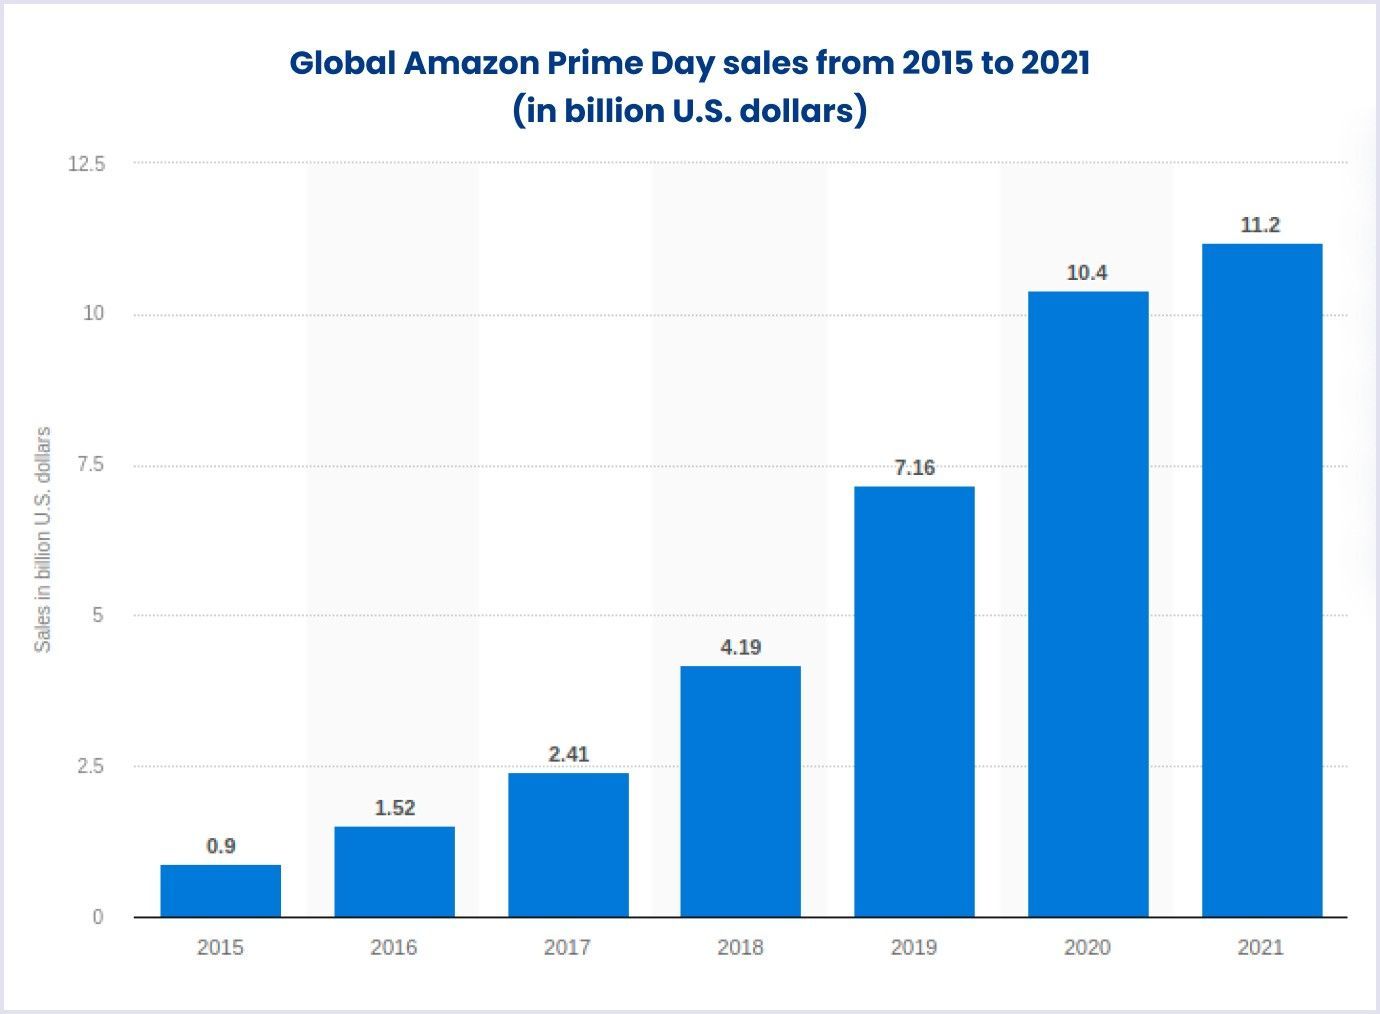 Amazon's Prime Day sales